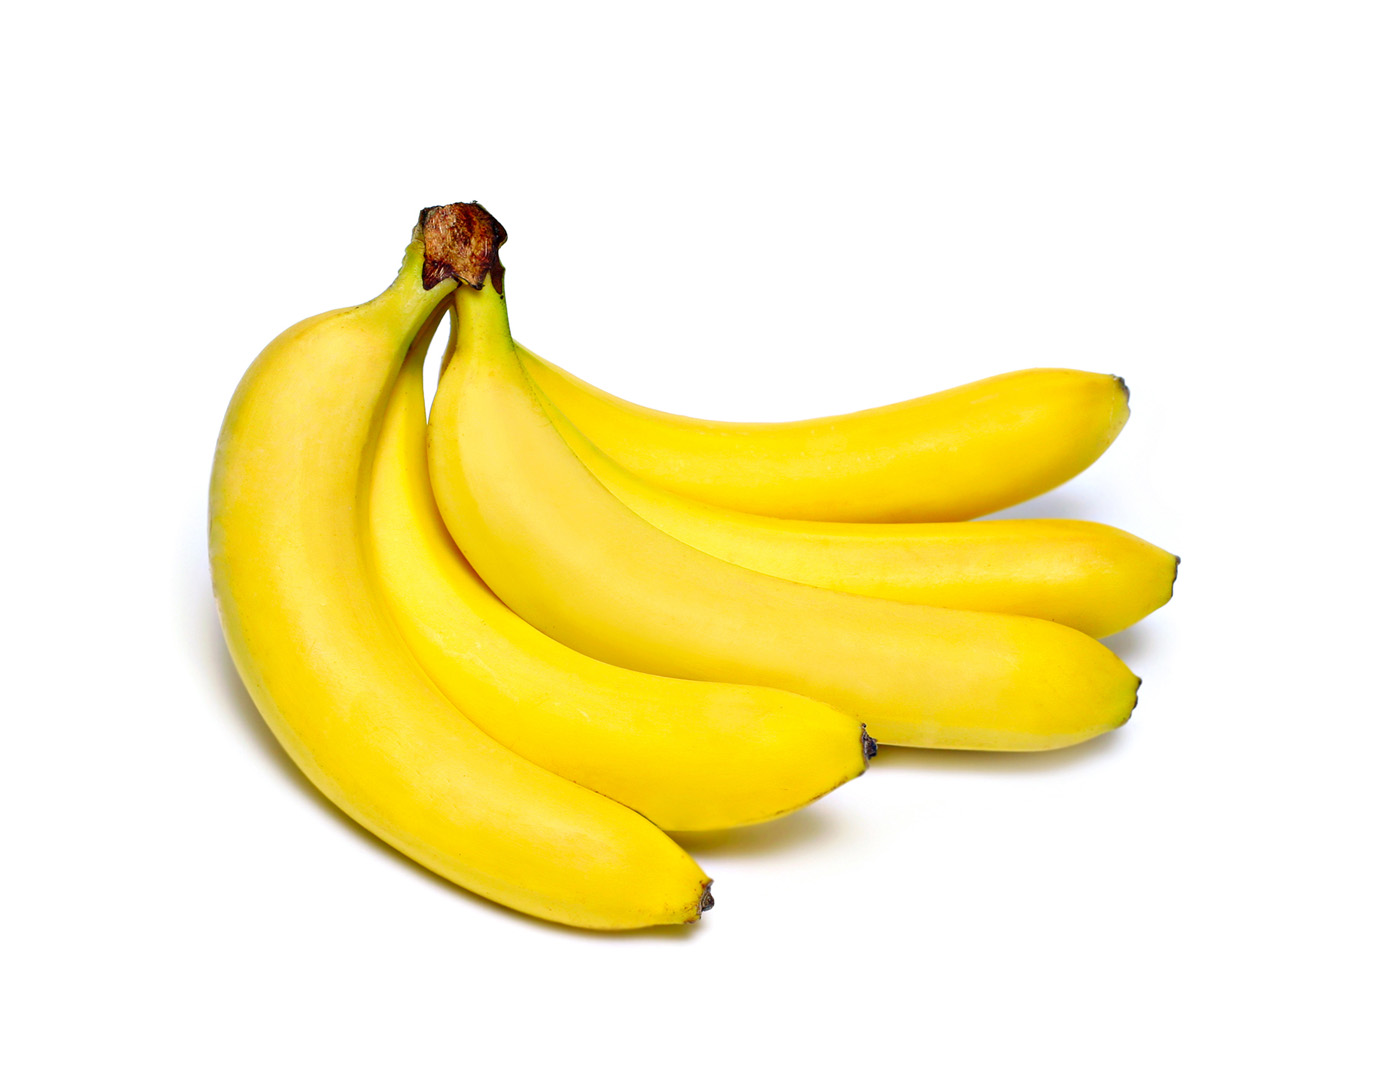 水果静物唯美高清晰摄影-香蕉苹果---酷图编号